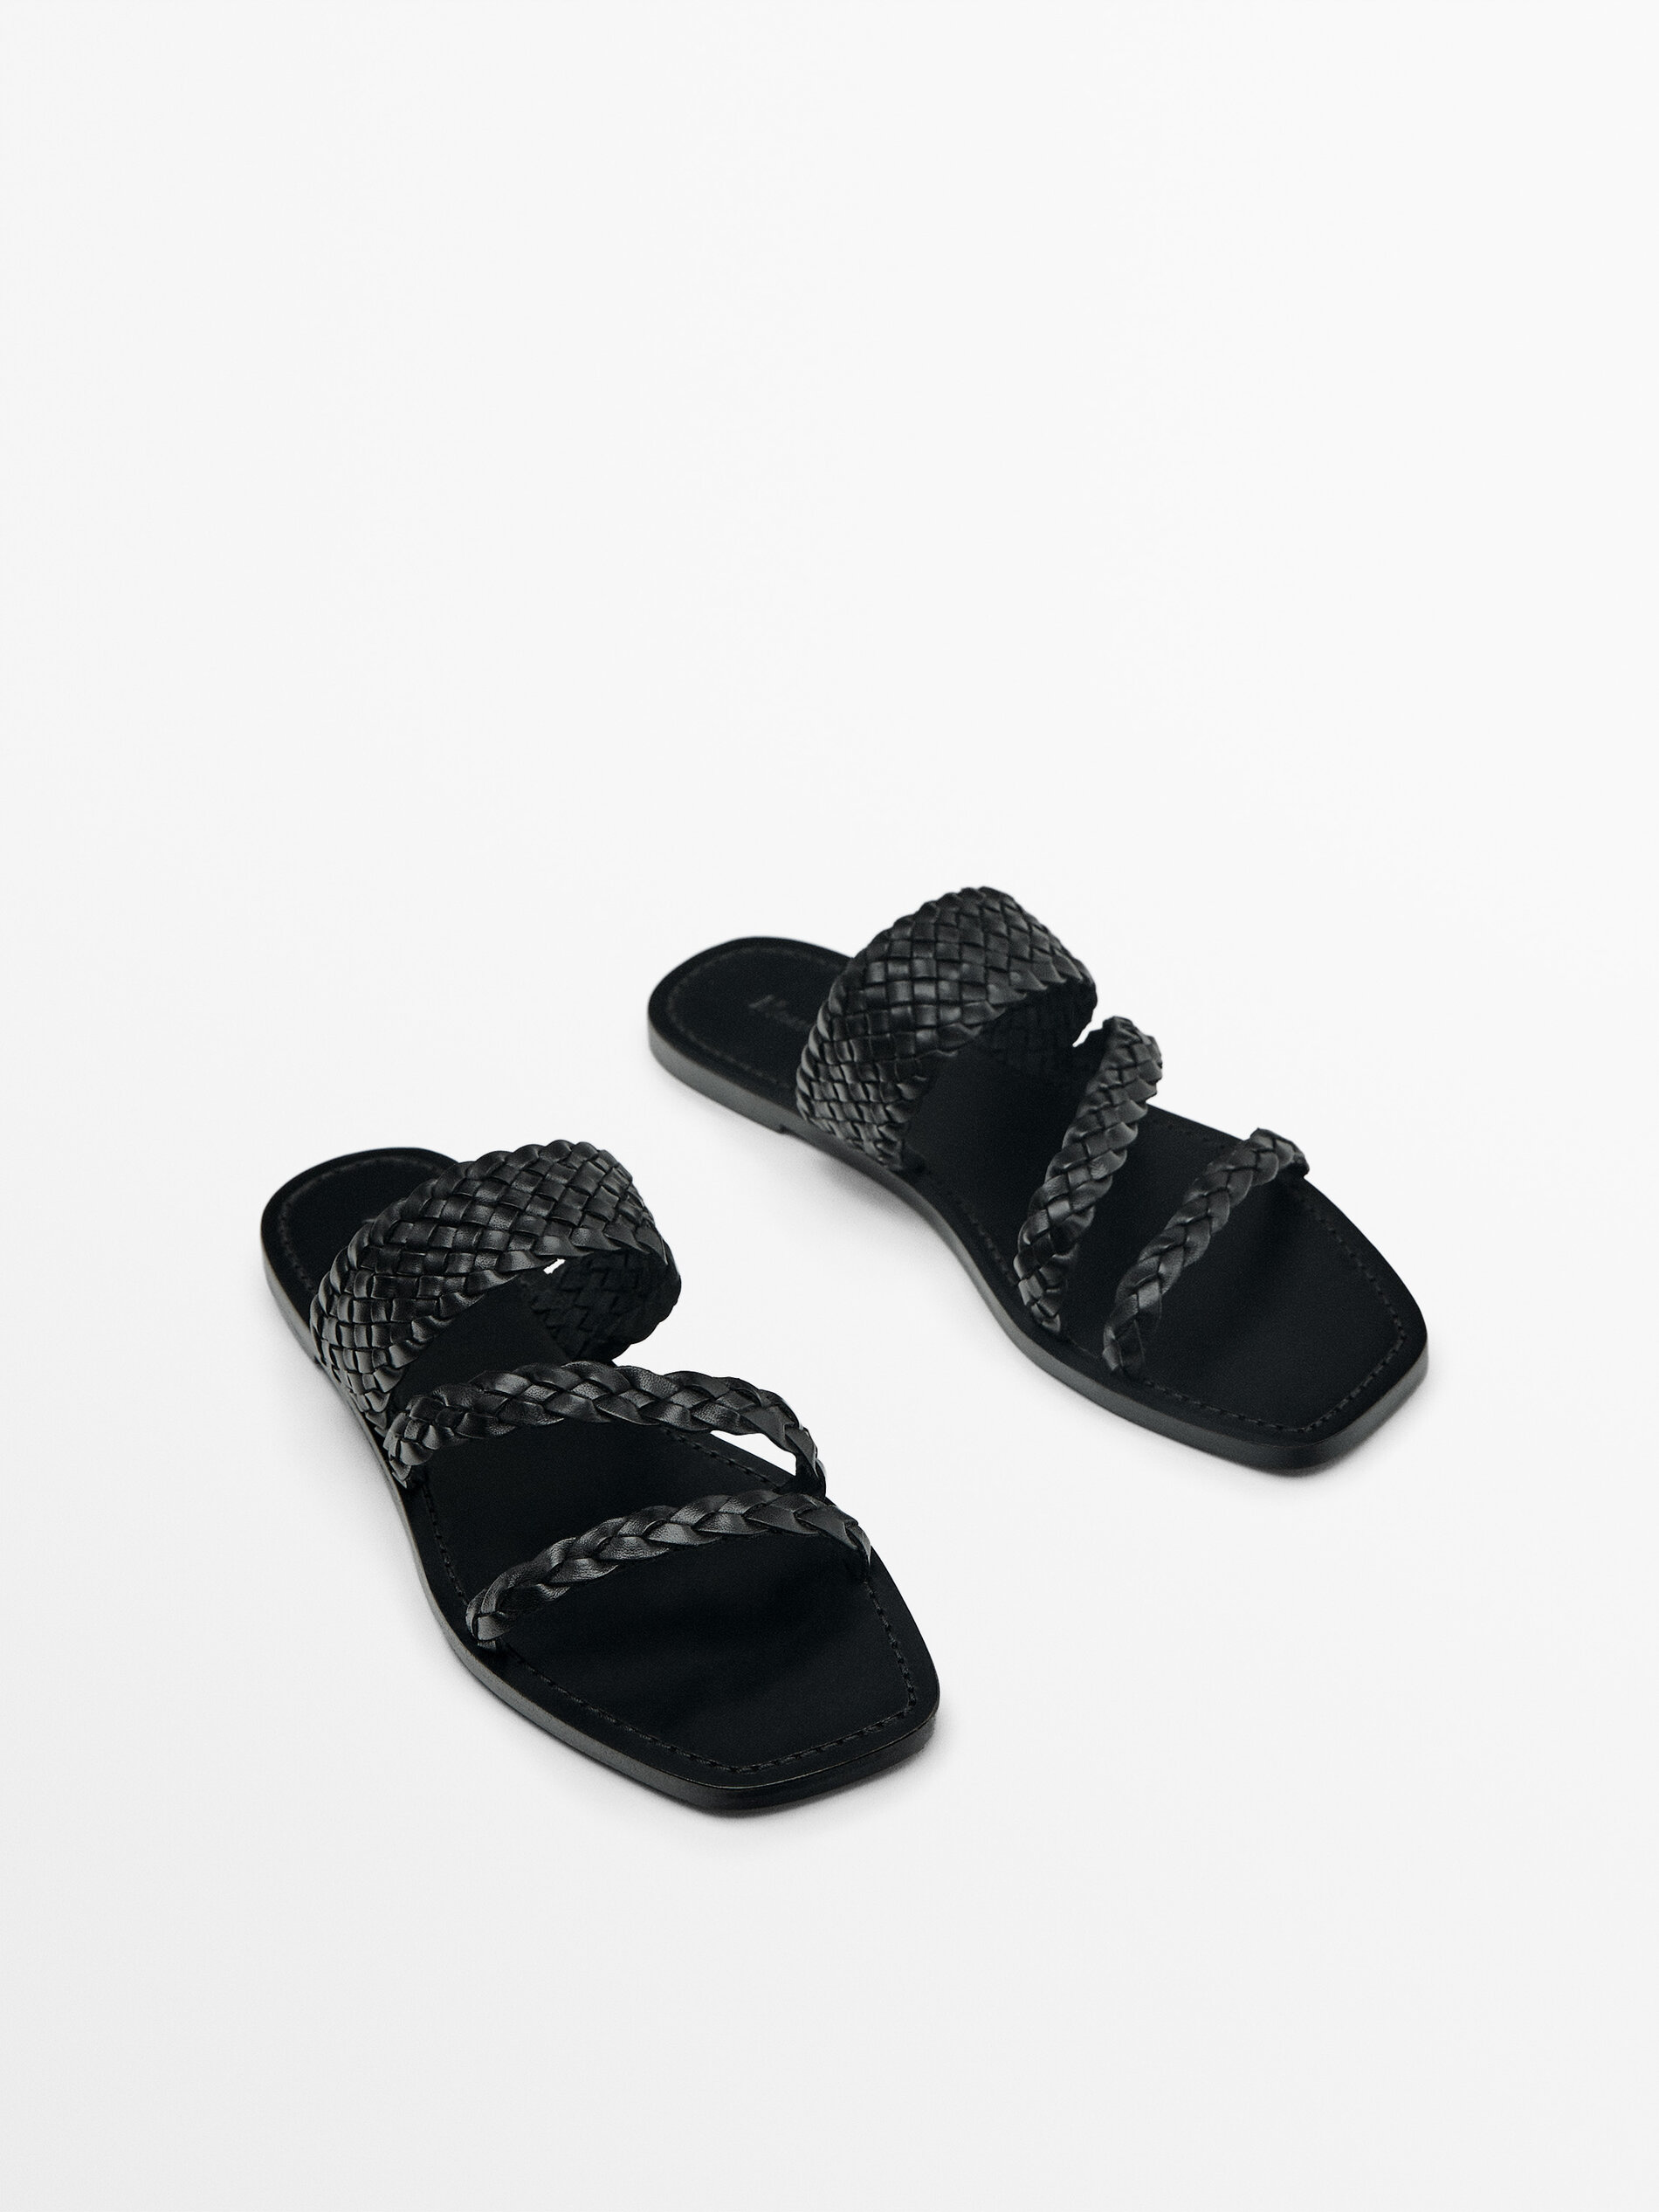 SALETTO Black Metallic with White Bottom Woven Sandals